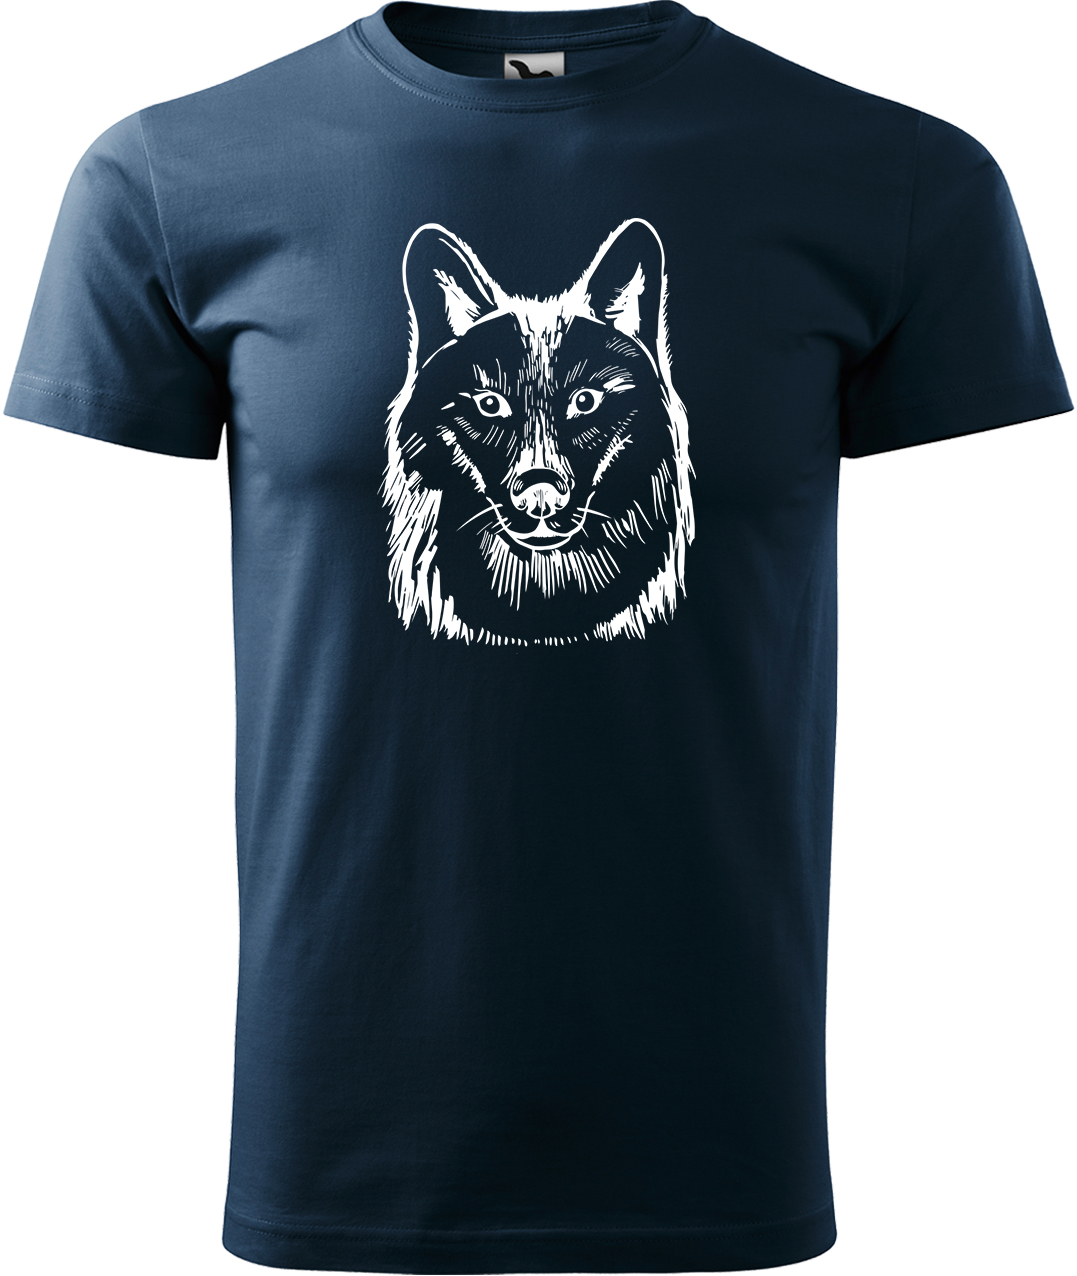 Pánské tričko s vlkem - Kresba vlka Velikost: L, Barva: Námořní modrá (02), Střih: pánský